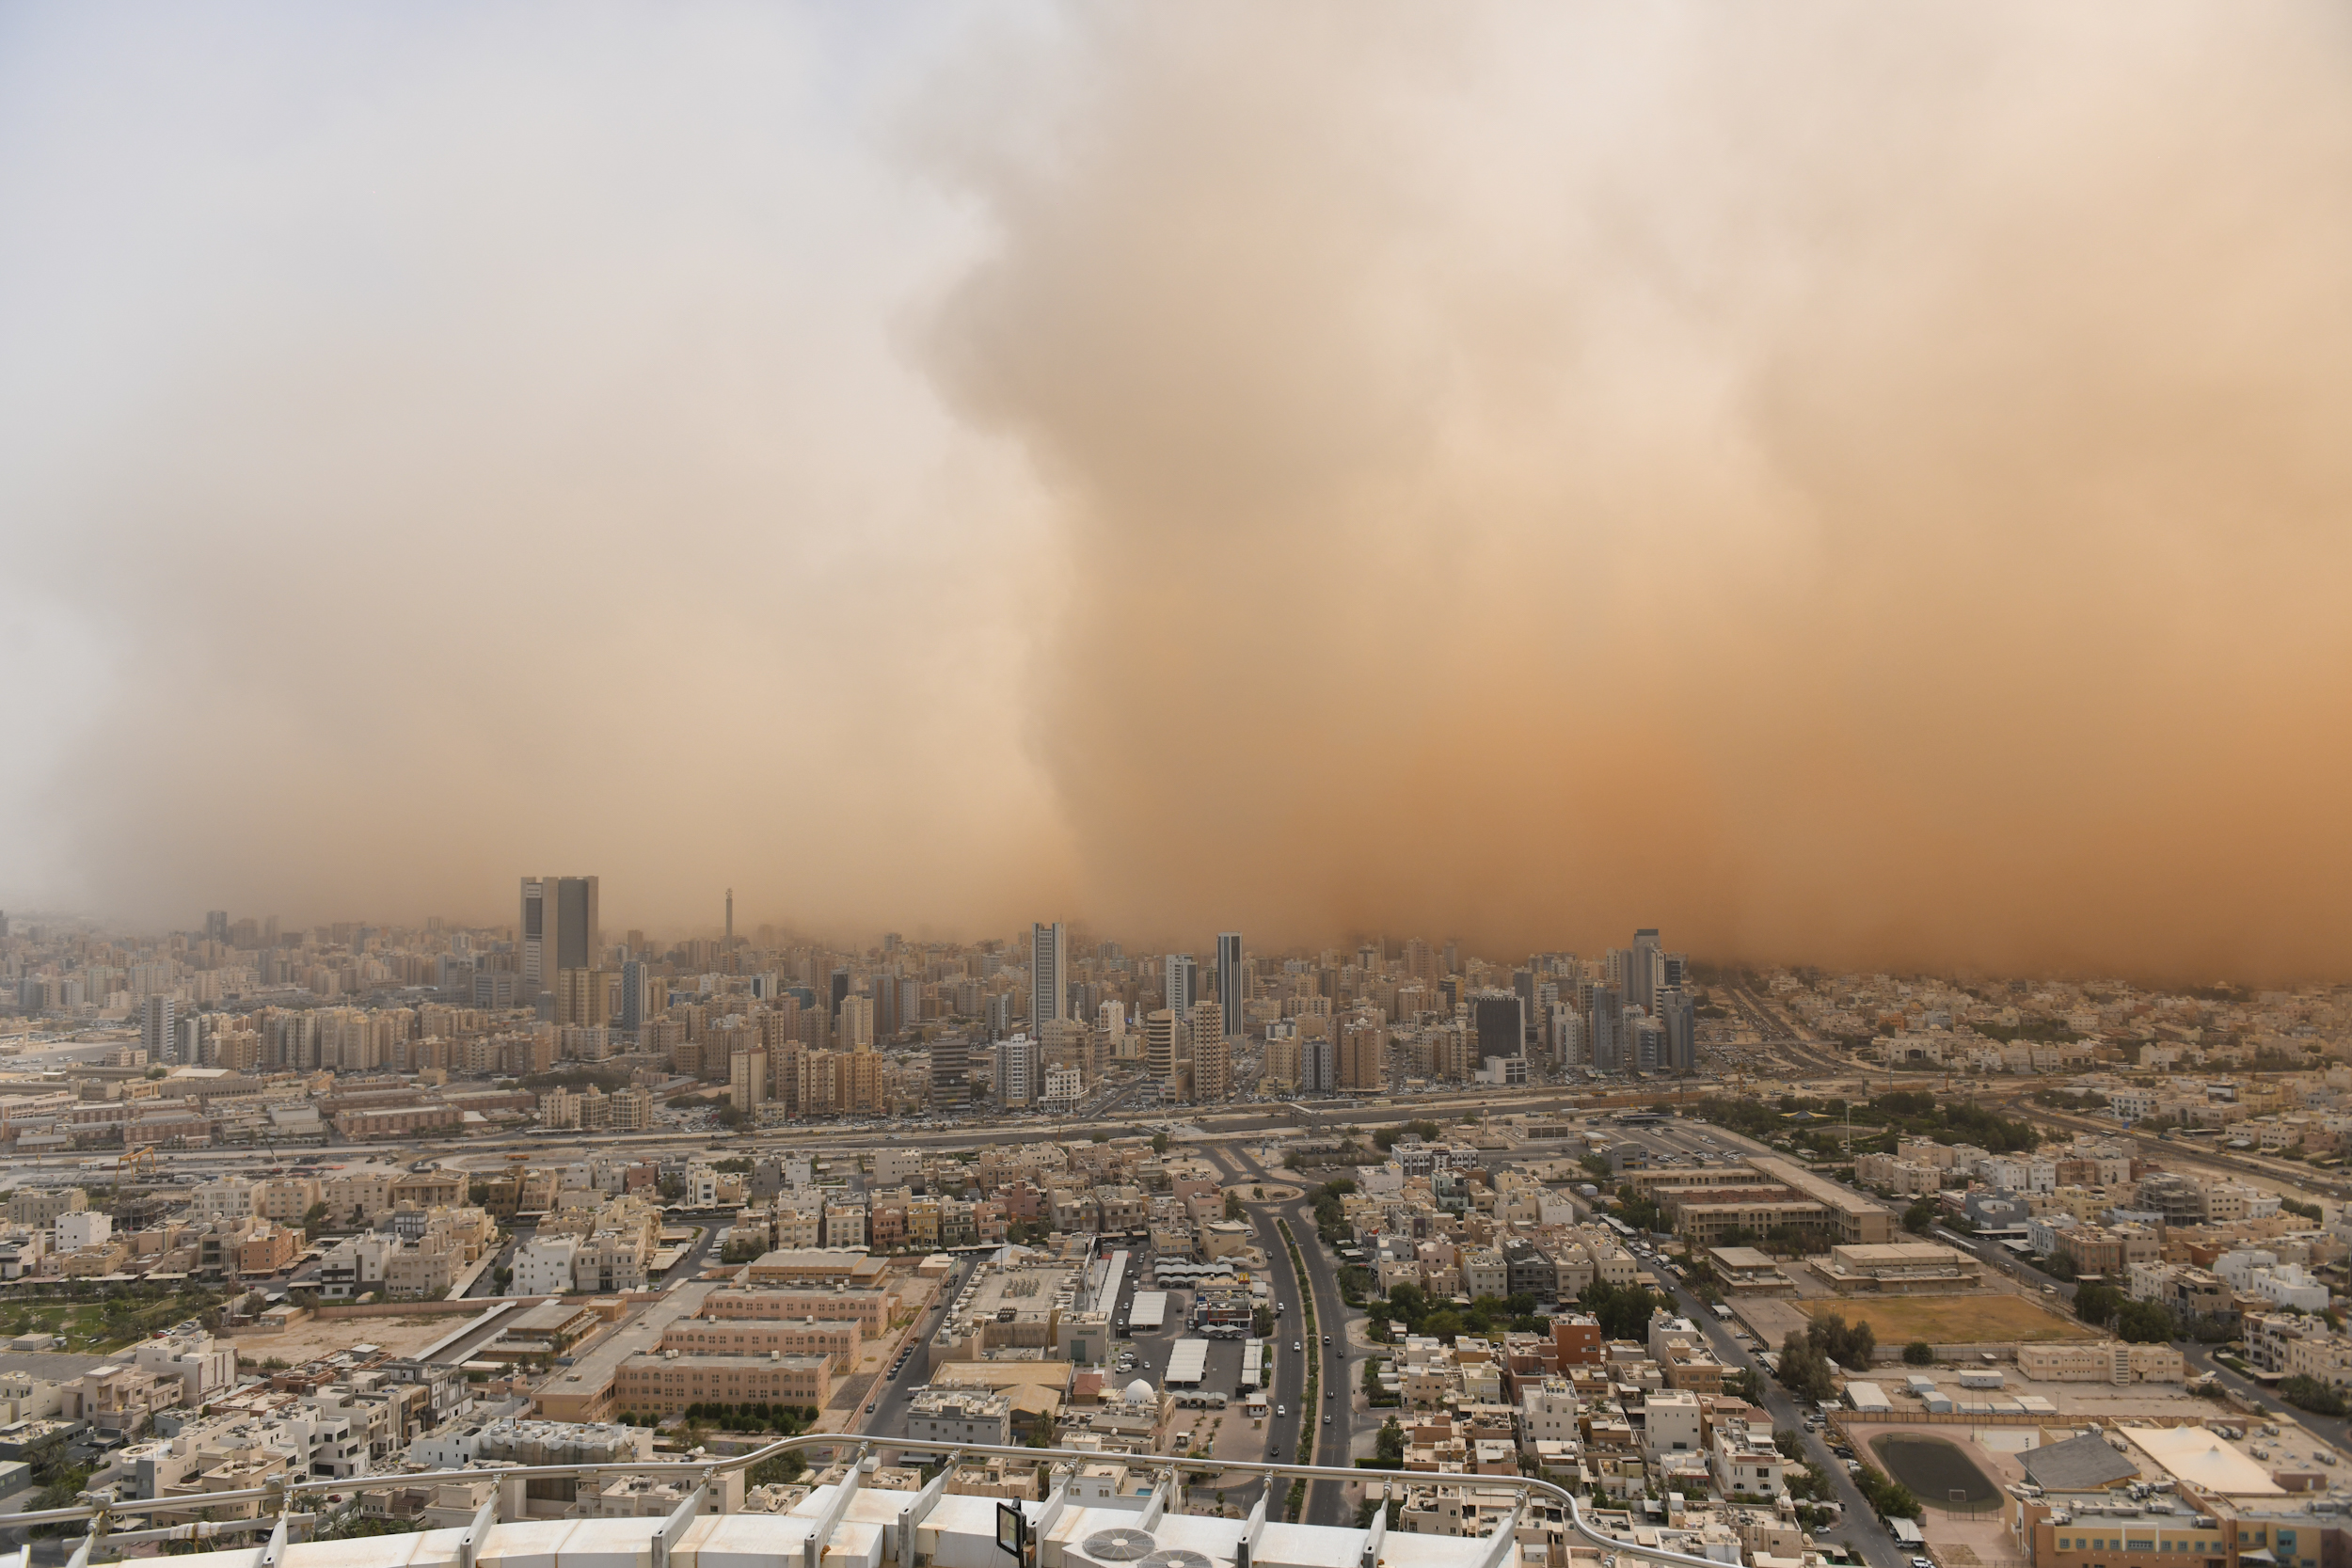 الأرصاد الجوية: الظواهر الغبارية نتاج موقع الكويت الجغرافي والظروف المناخية الصحراوية المحيطة                                                                                                                                                             